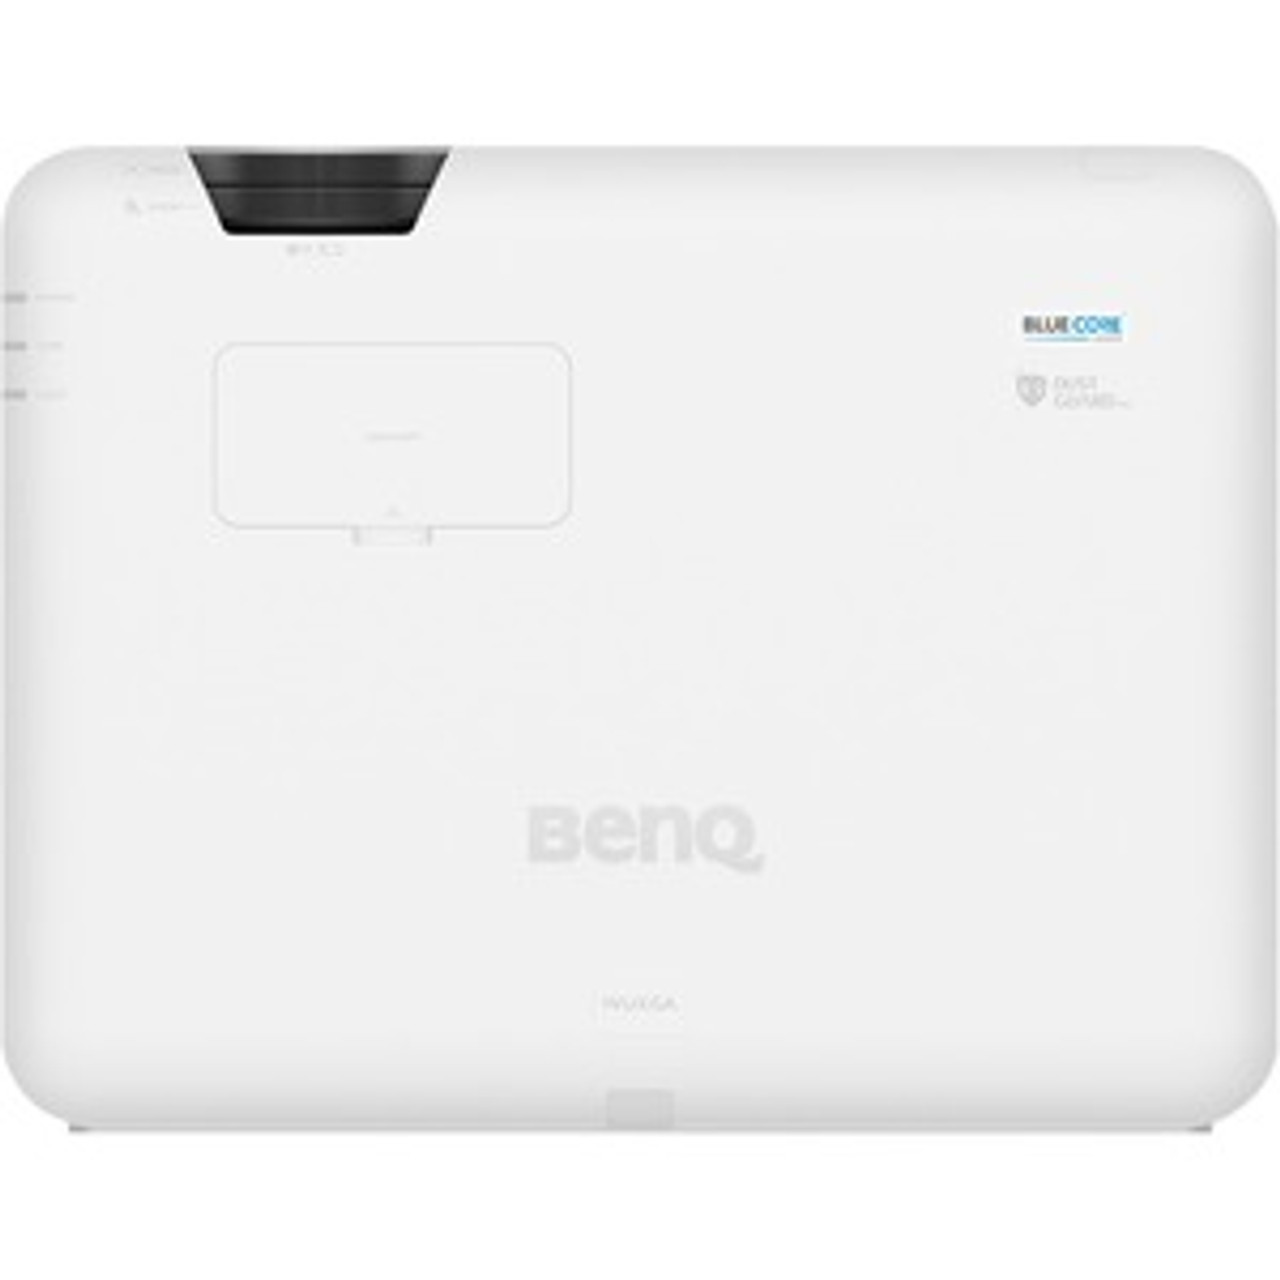 BenQ LU950 3D Ready DLP Projector